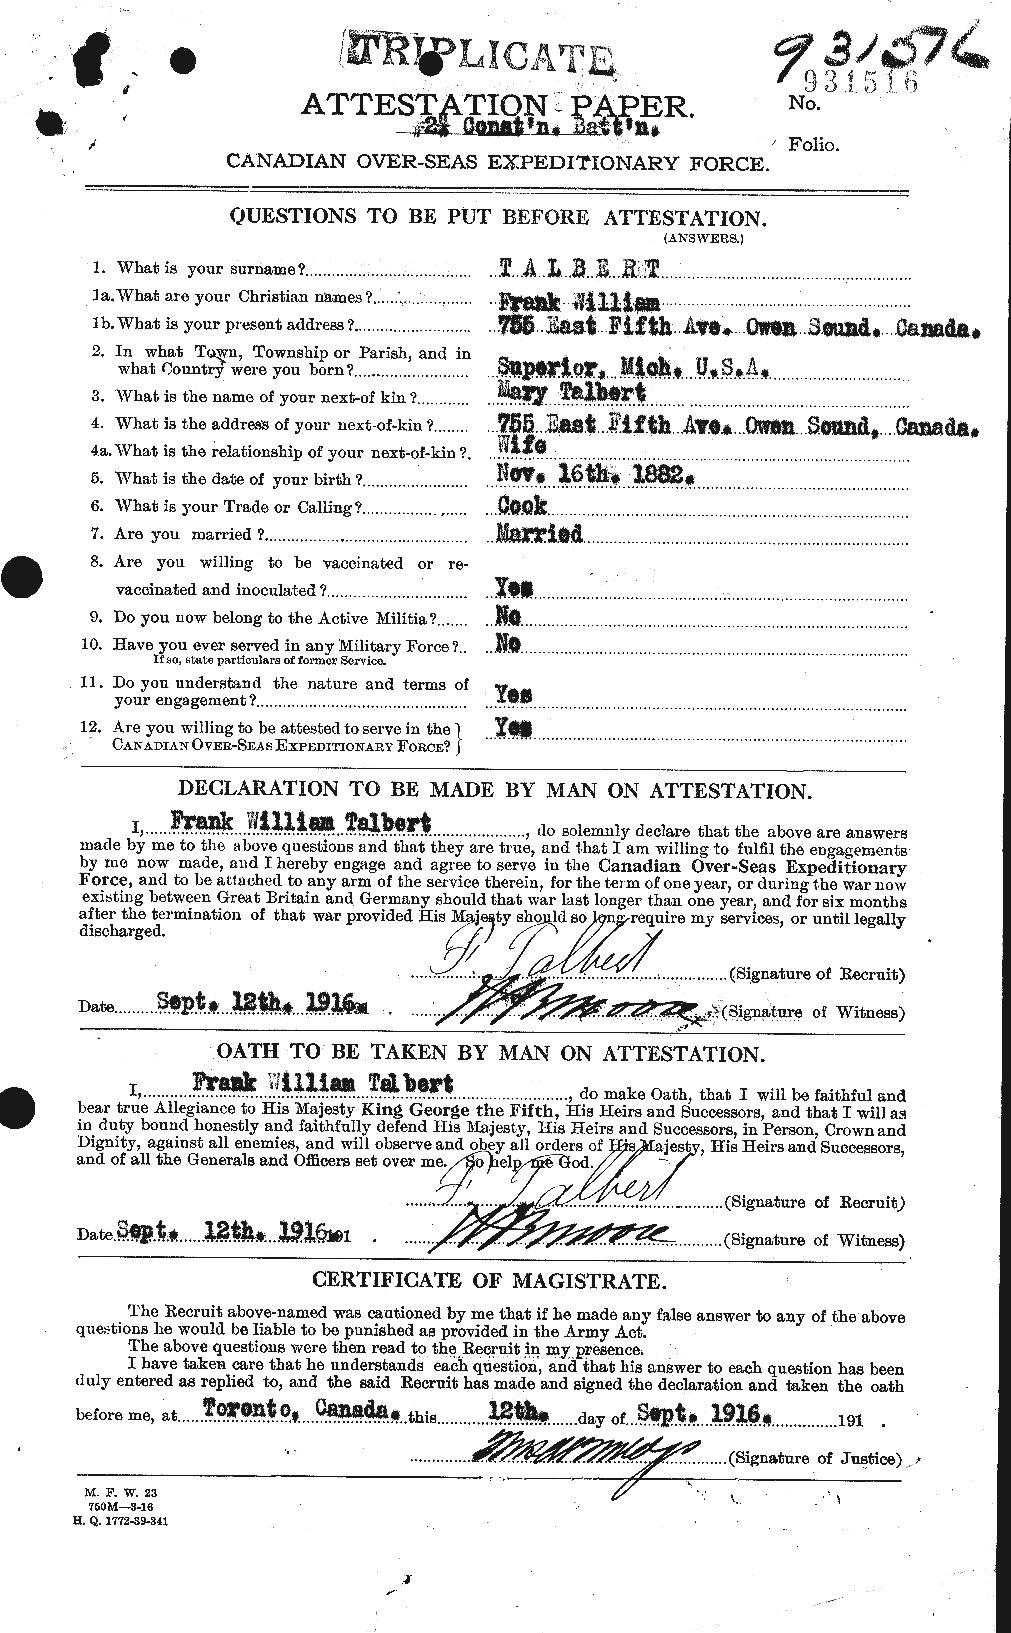 Dossiers du Personnel de la Première Guerre mondiale - CEC 126942a